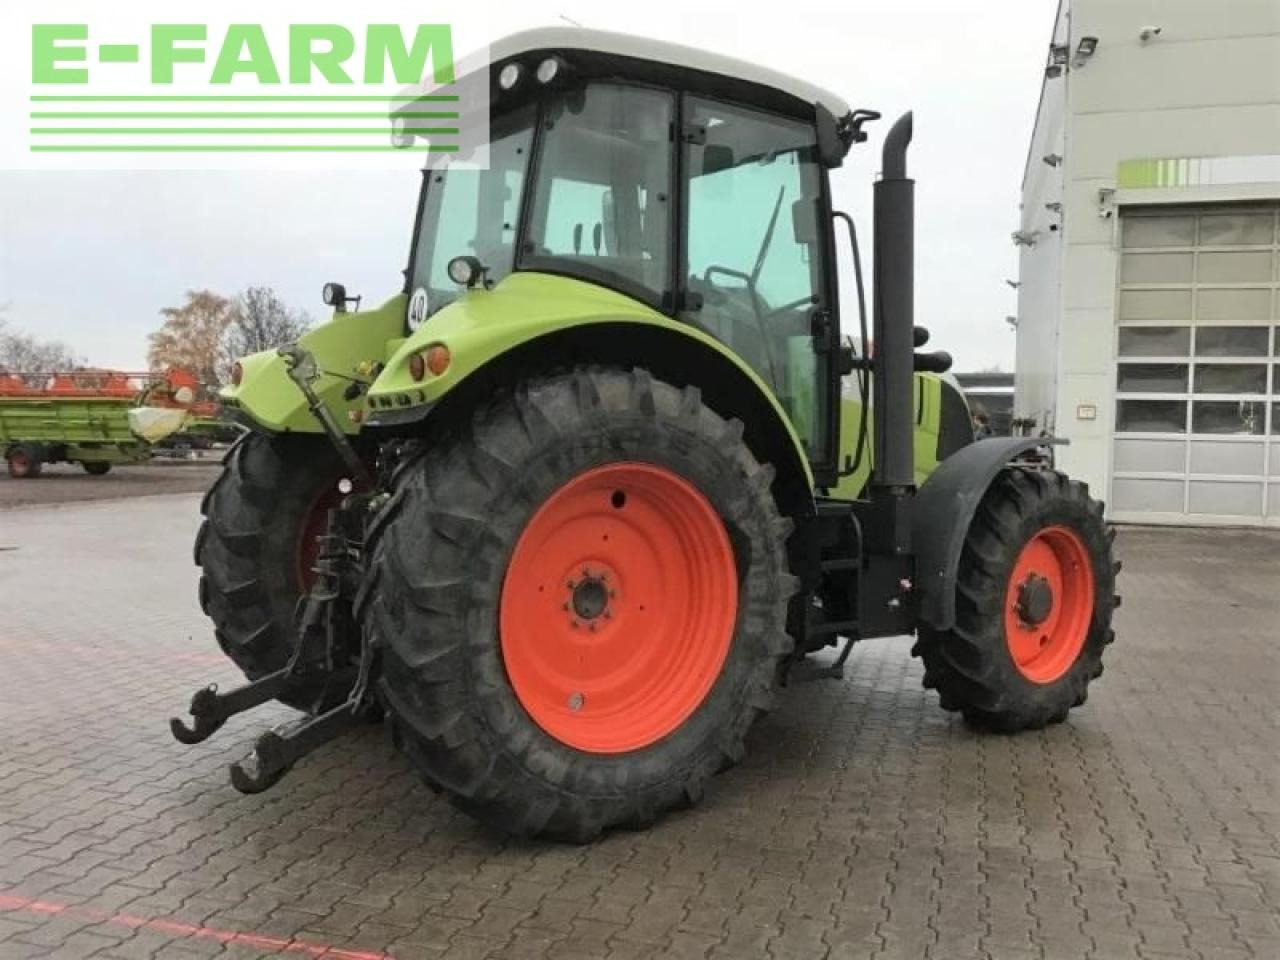 Farm tractor CLAAS arion 530 cis CIS